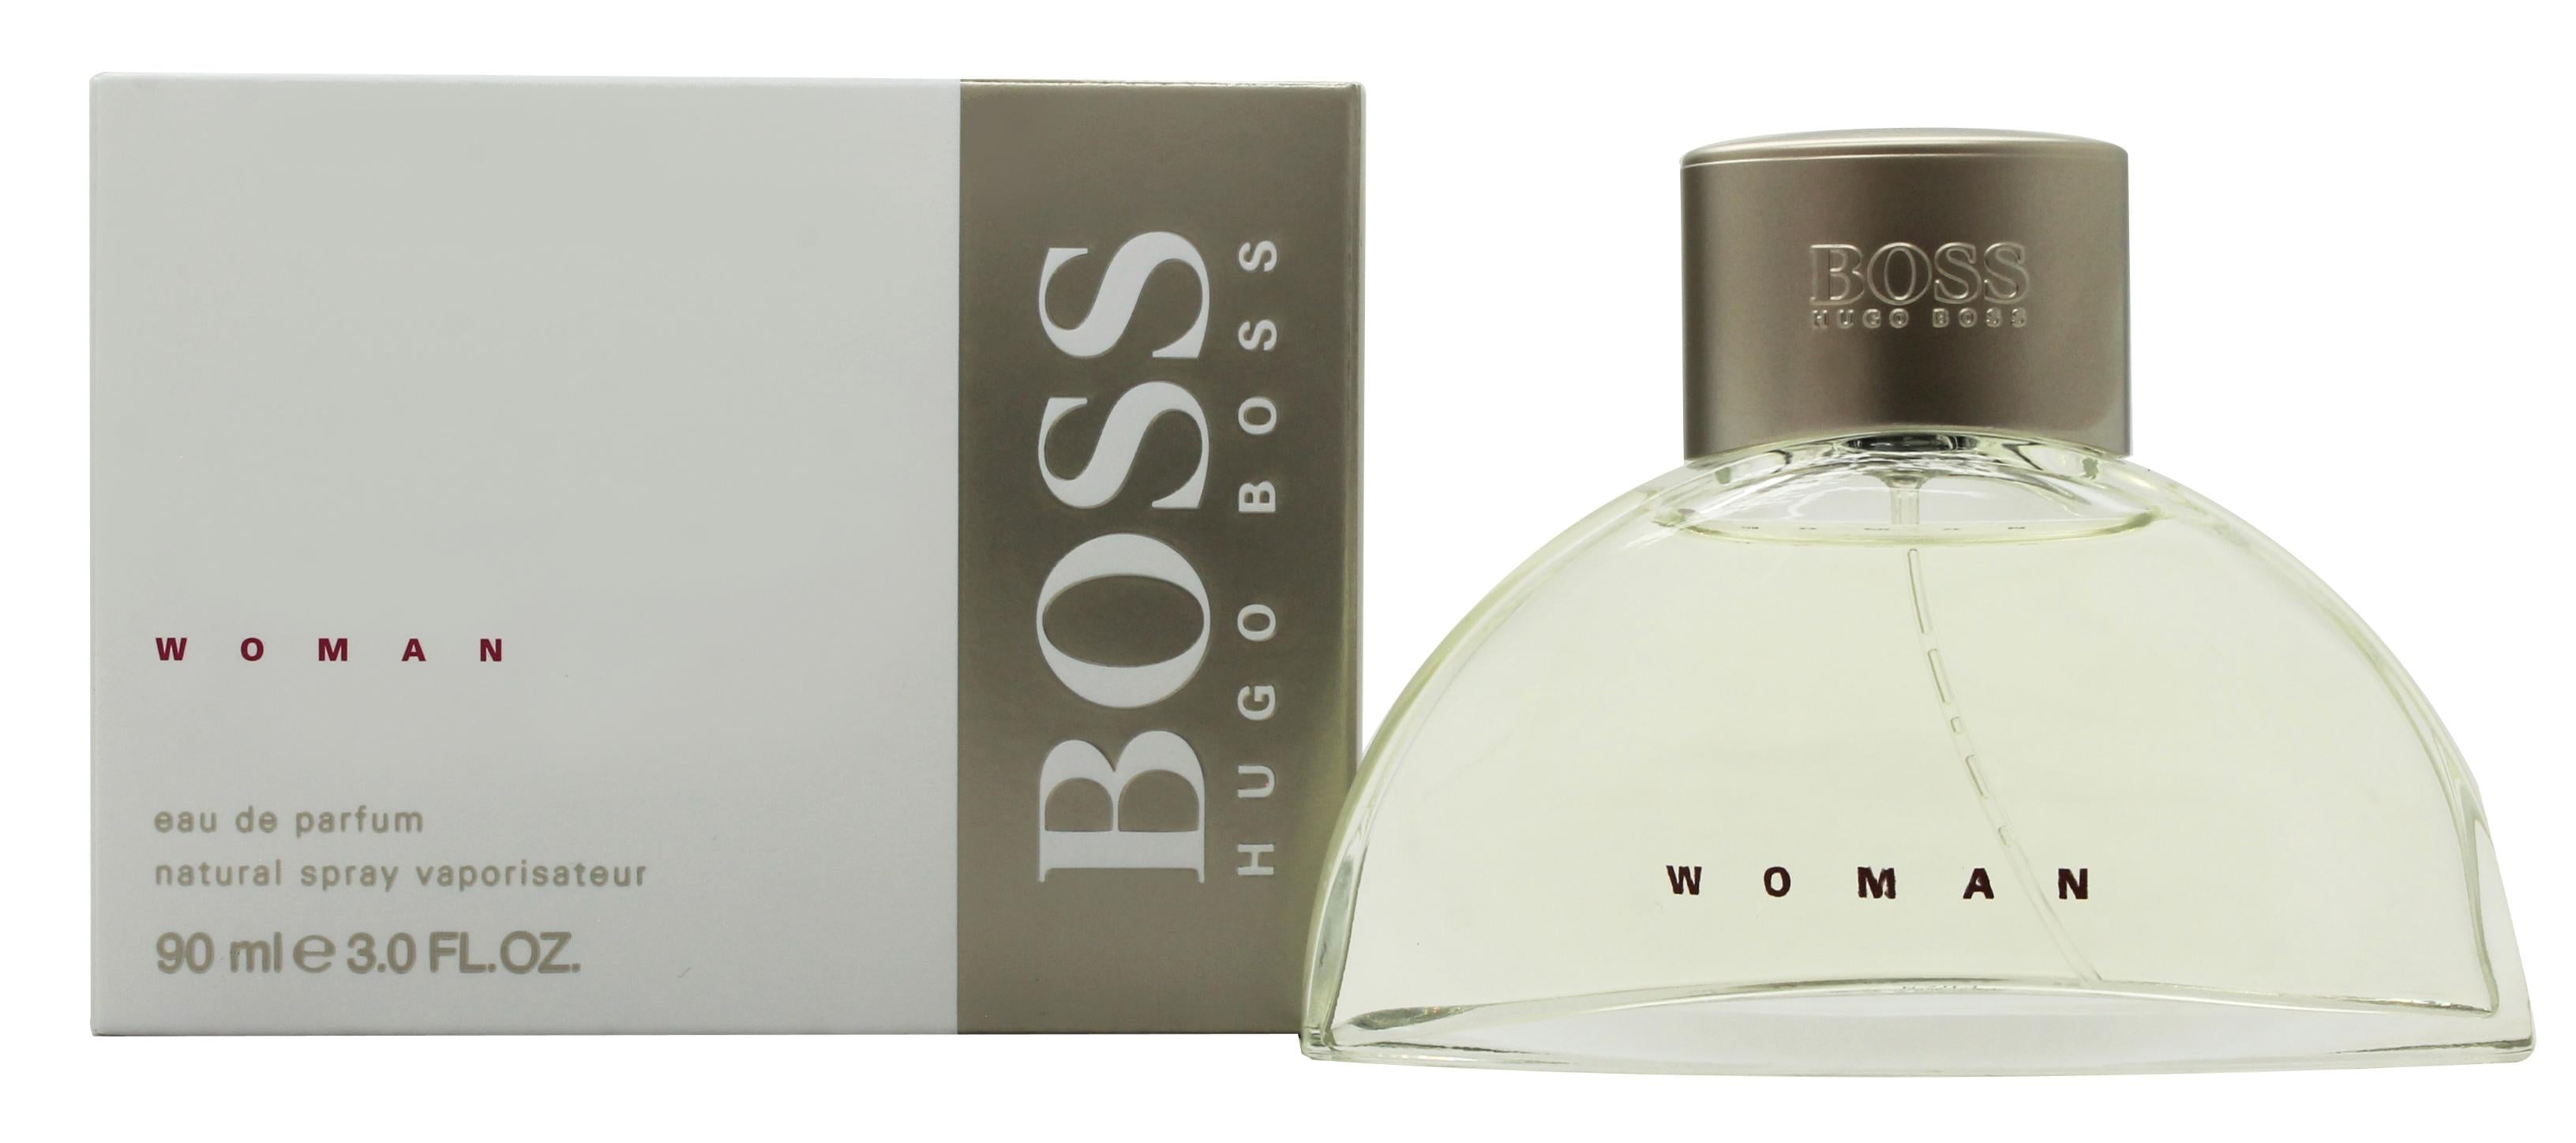 View Hugo Boss Boss Woman Eau de Parfum 90ml Spray information